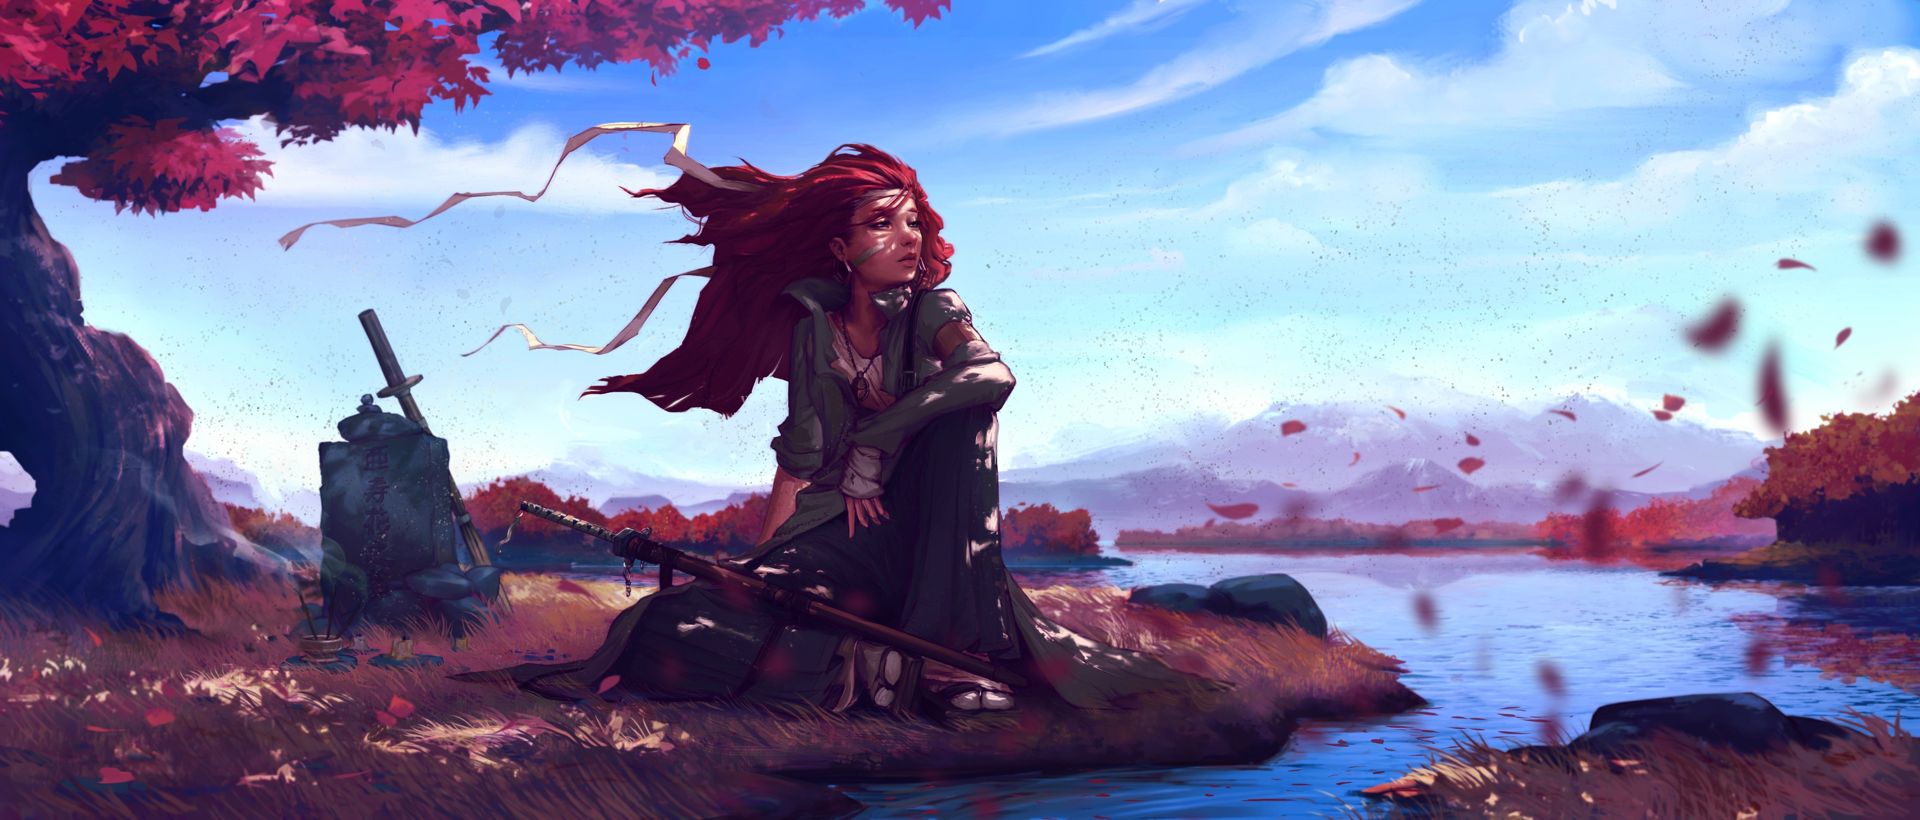 девушка воин на привале у ручья, магия фэнтези картинка